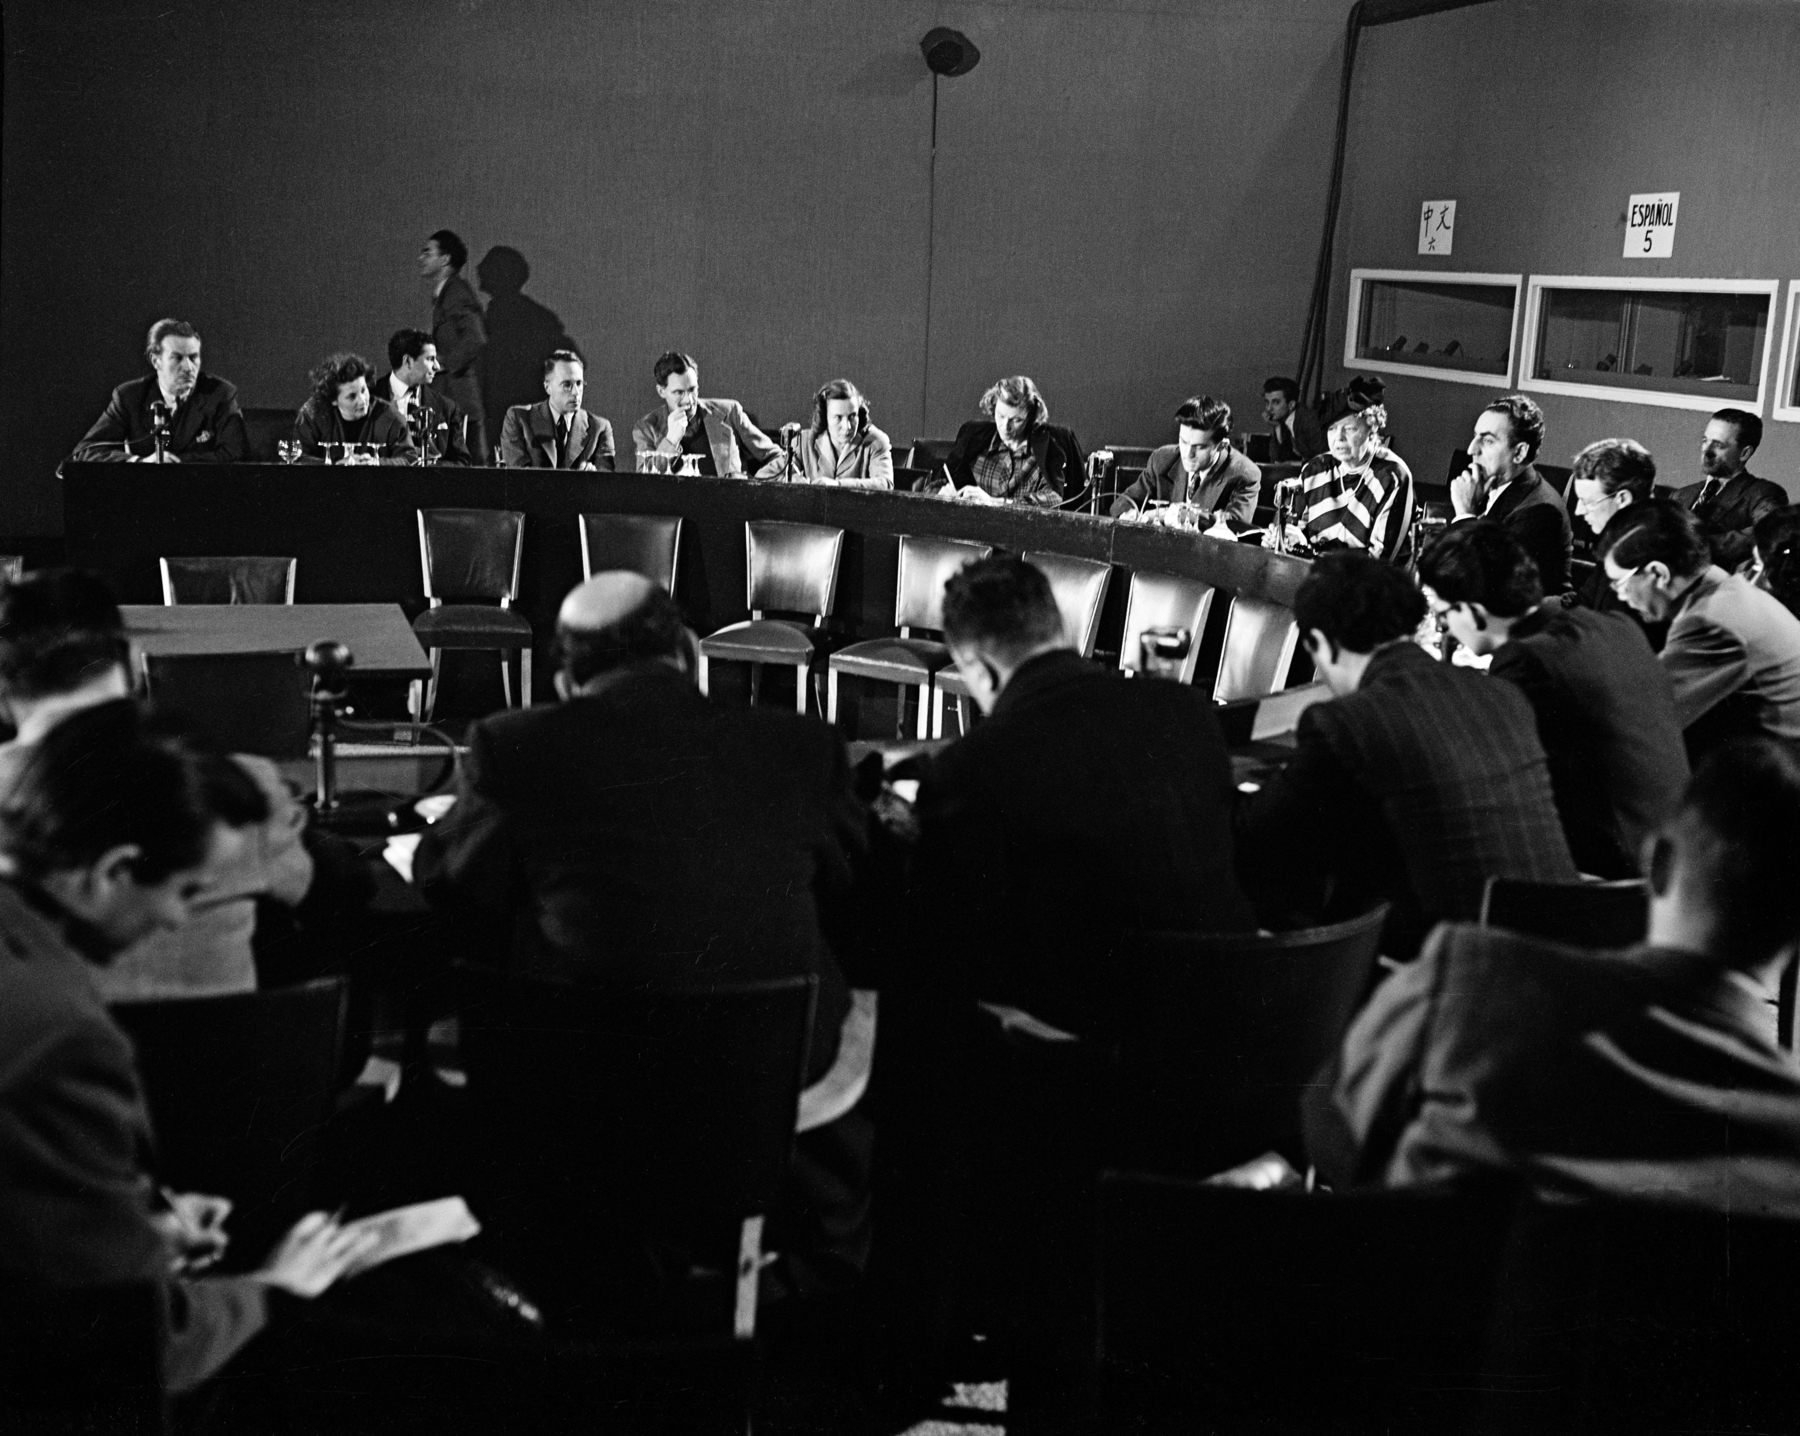 Fotografia em preto e branco. Grupo de pessoas sentadas em torno de uma bancada oval.